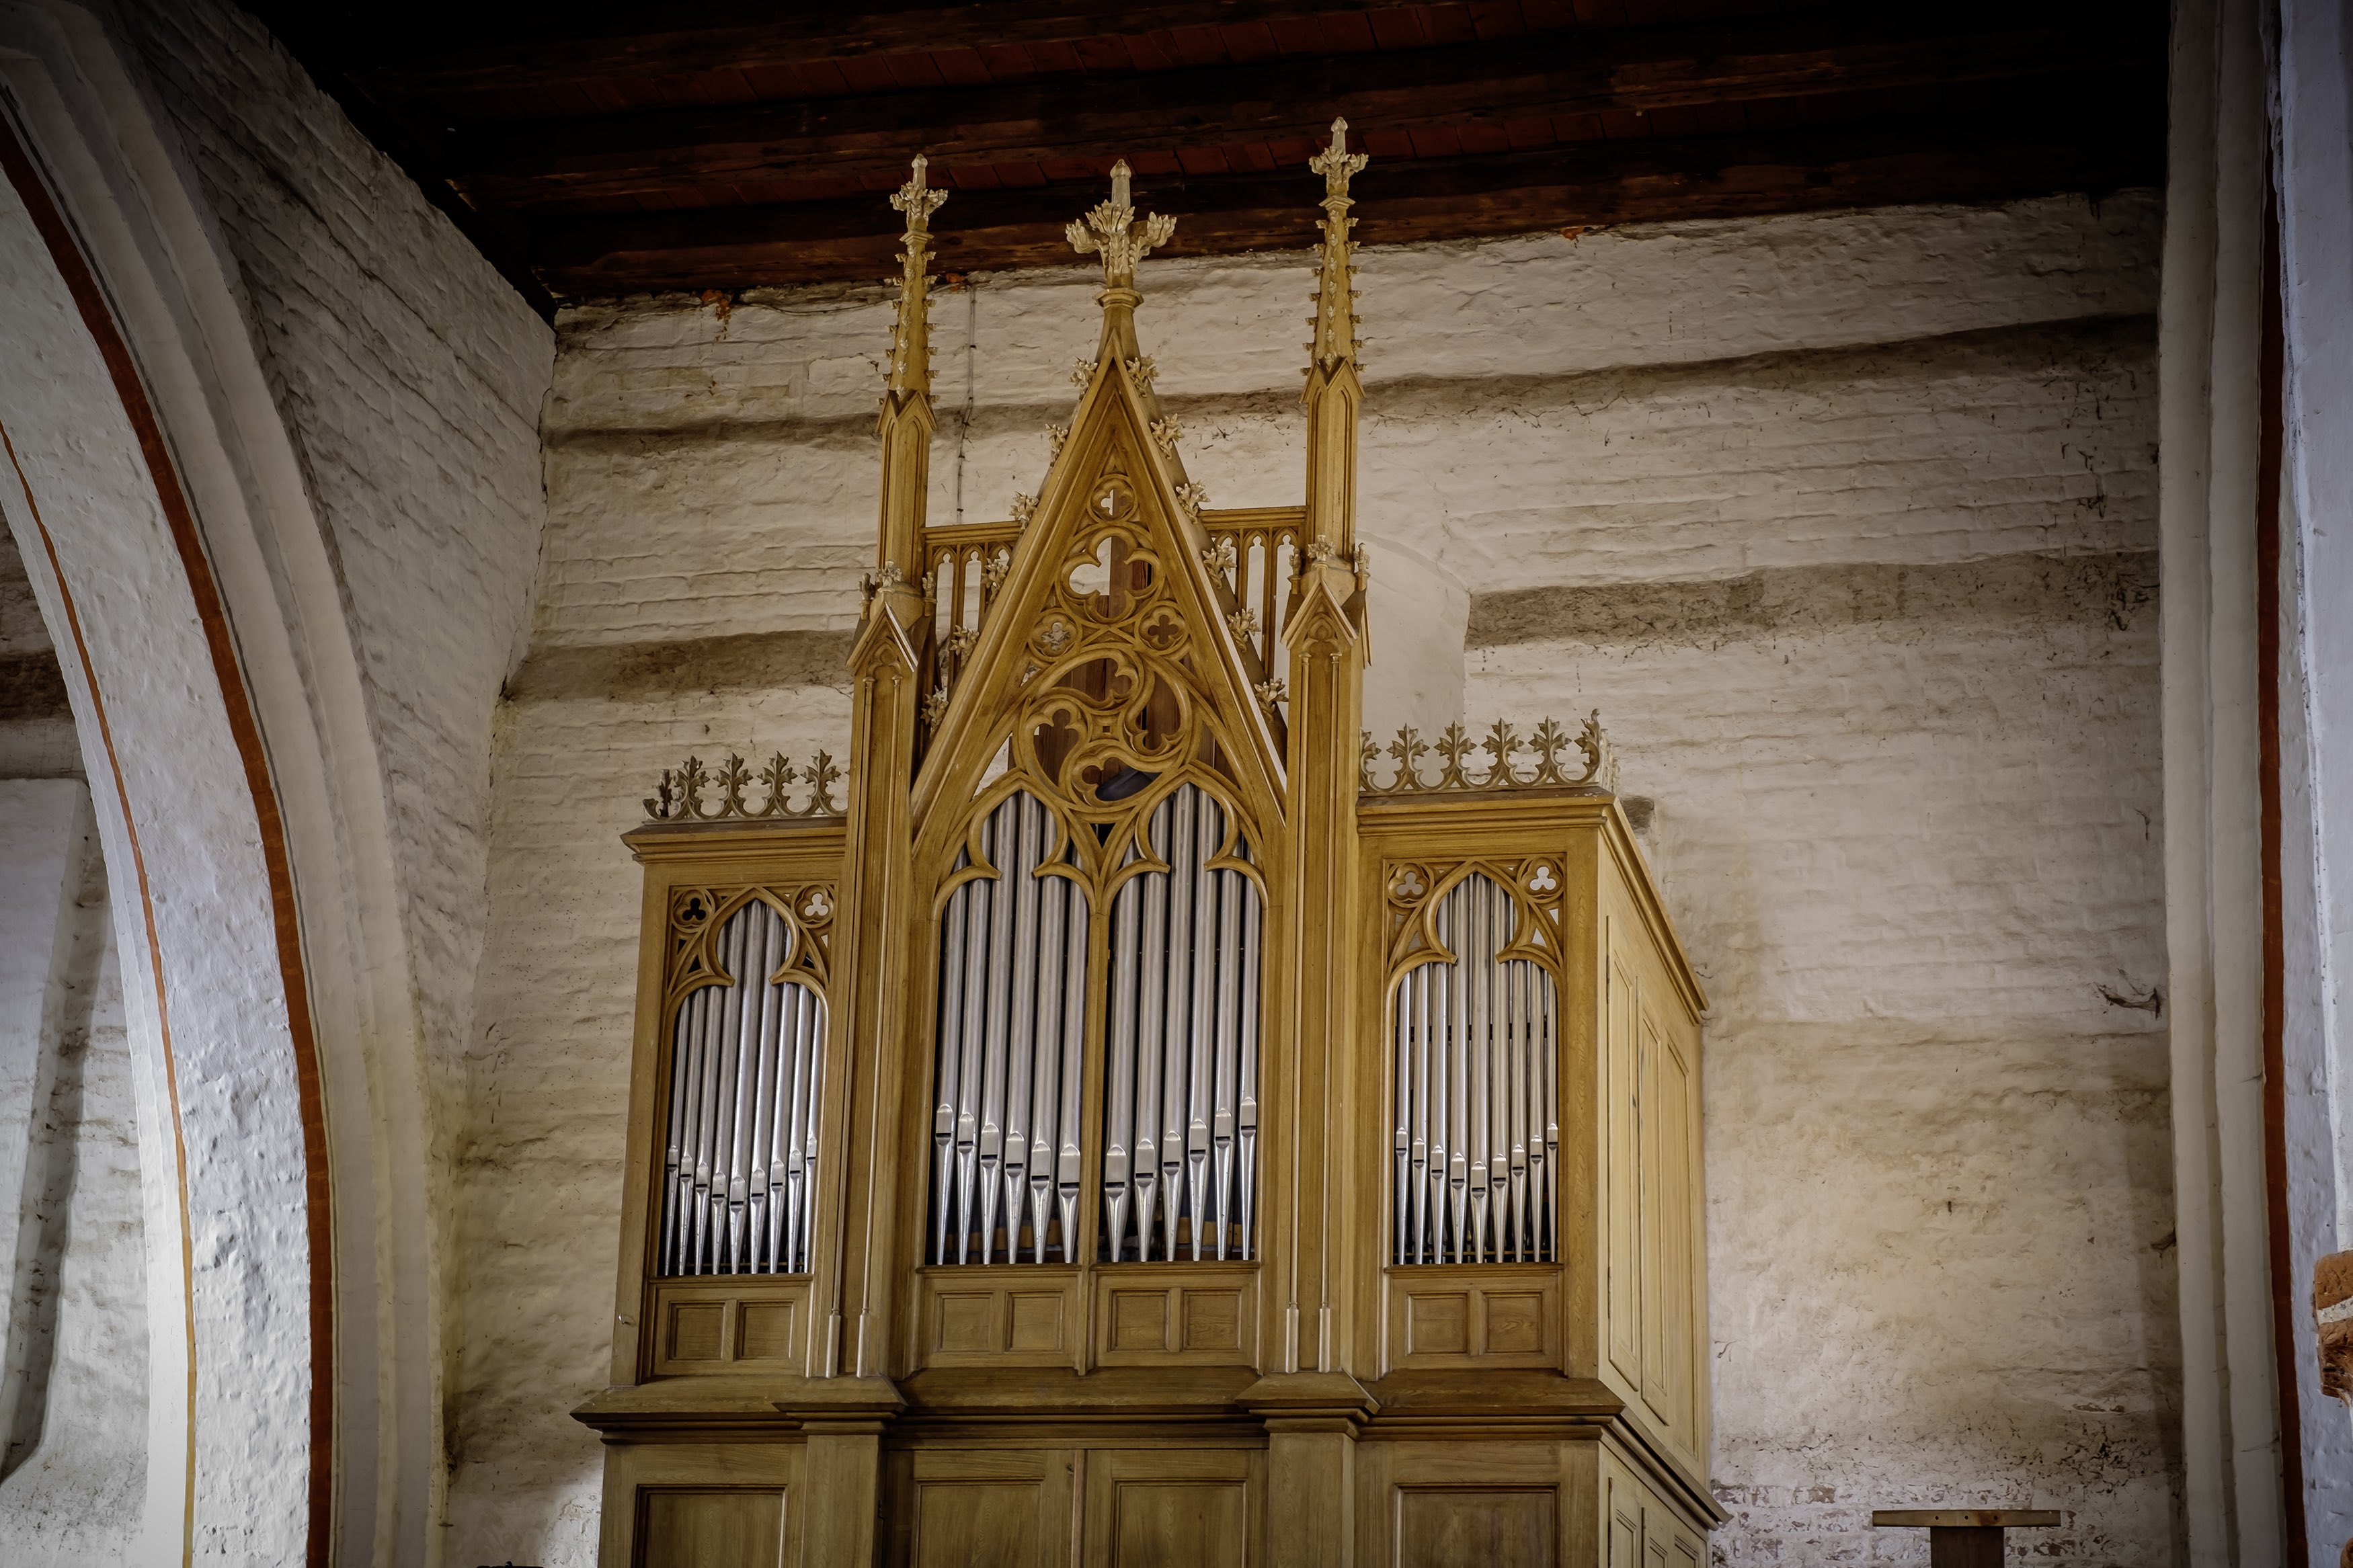 Orgel von Barim Grüneberg, 1867, in der Dorfkirche Reinberg, Foto: Heiko Preller